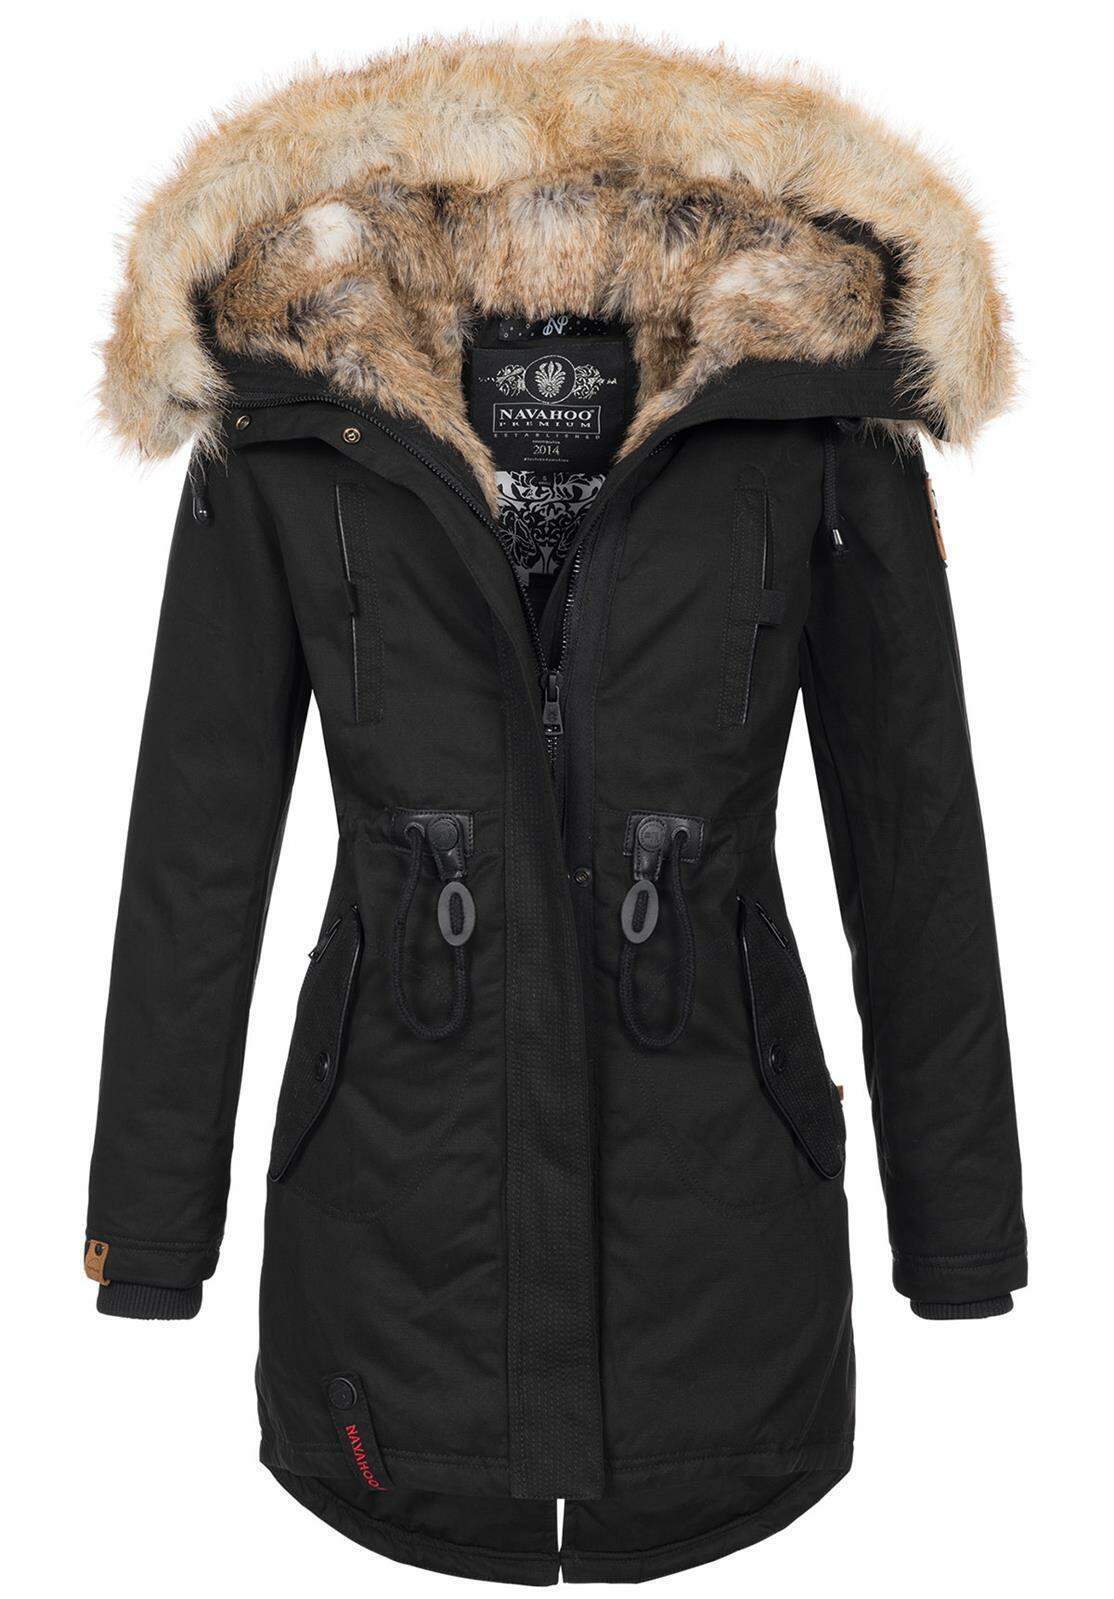 Navahoo warme Damen Winter Jacke lang mit Kunstfell B660 Schwarz Gr 246 223 